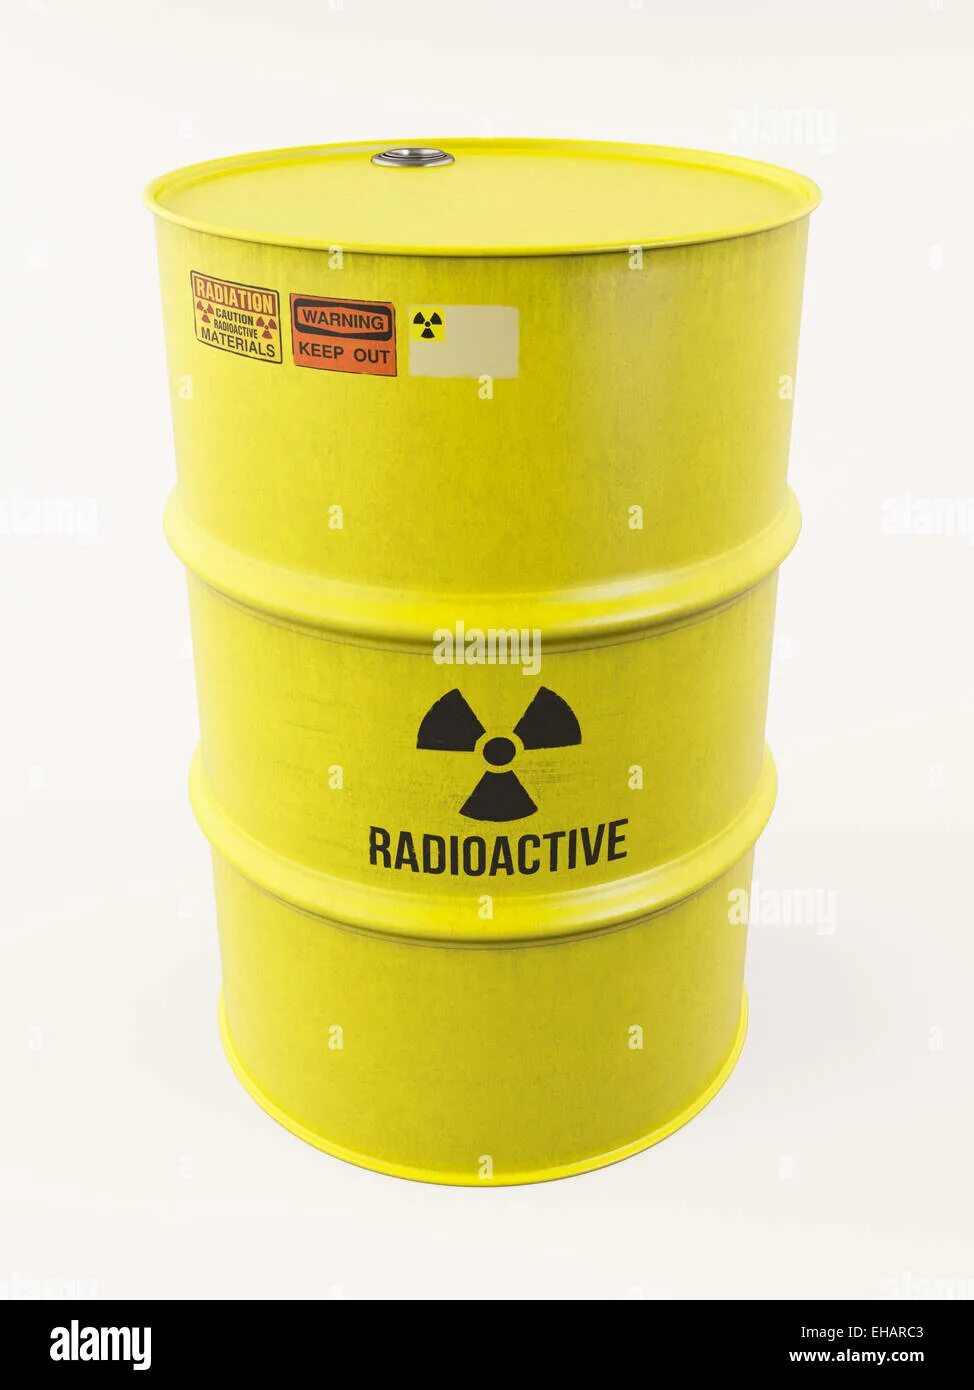 Желтая бочка. Бочка металлическая желтая. Бочка с радиоактивными отходами. Бочки с ядерными отходами. Желтая бочка купить